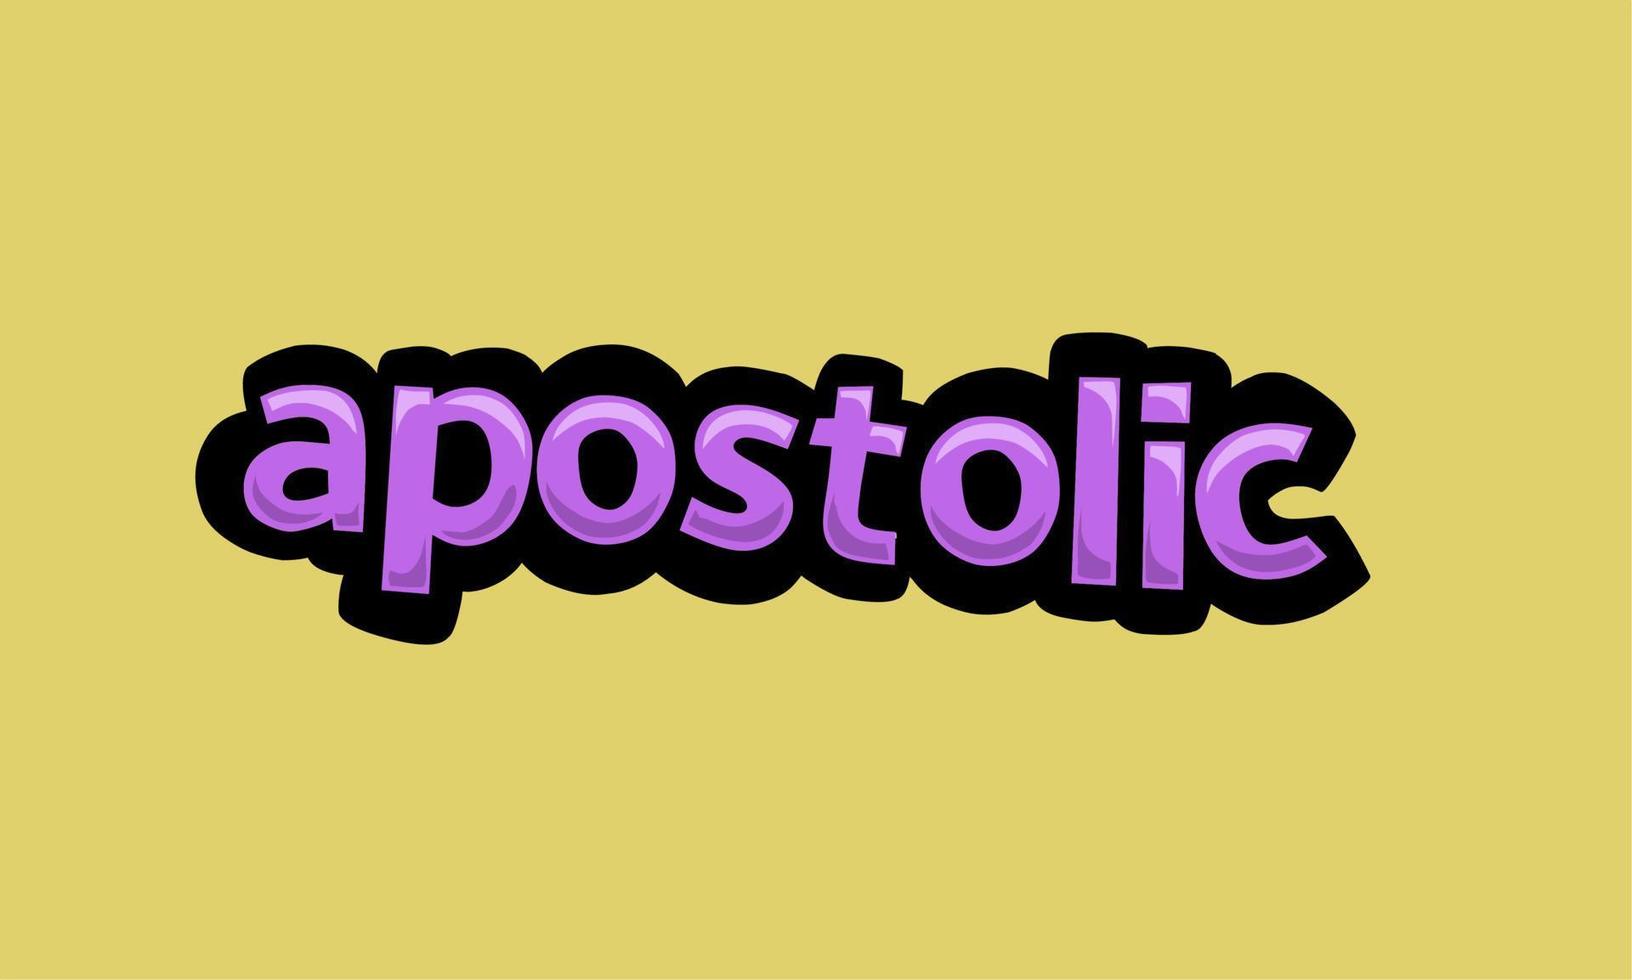 Apostolisches Schreiben, Vektordesign auf gelbem Hintergrund vektor